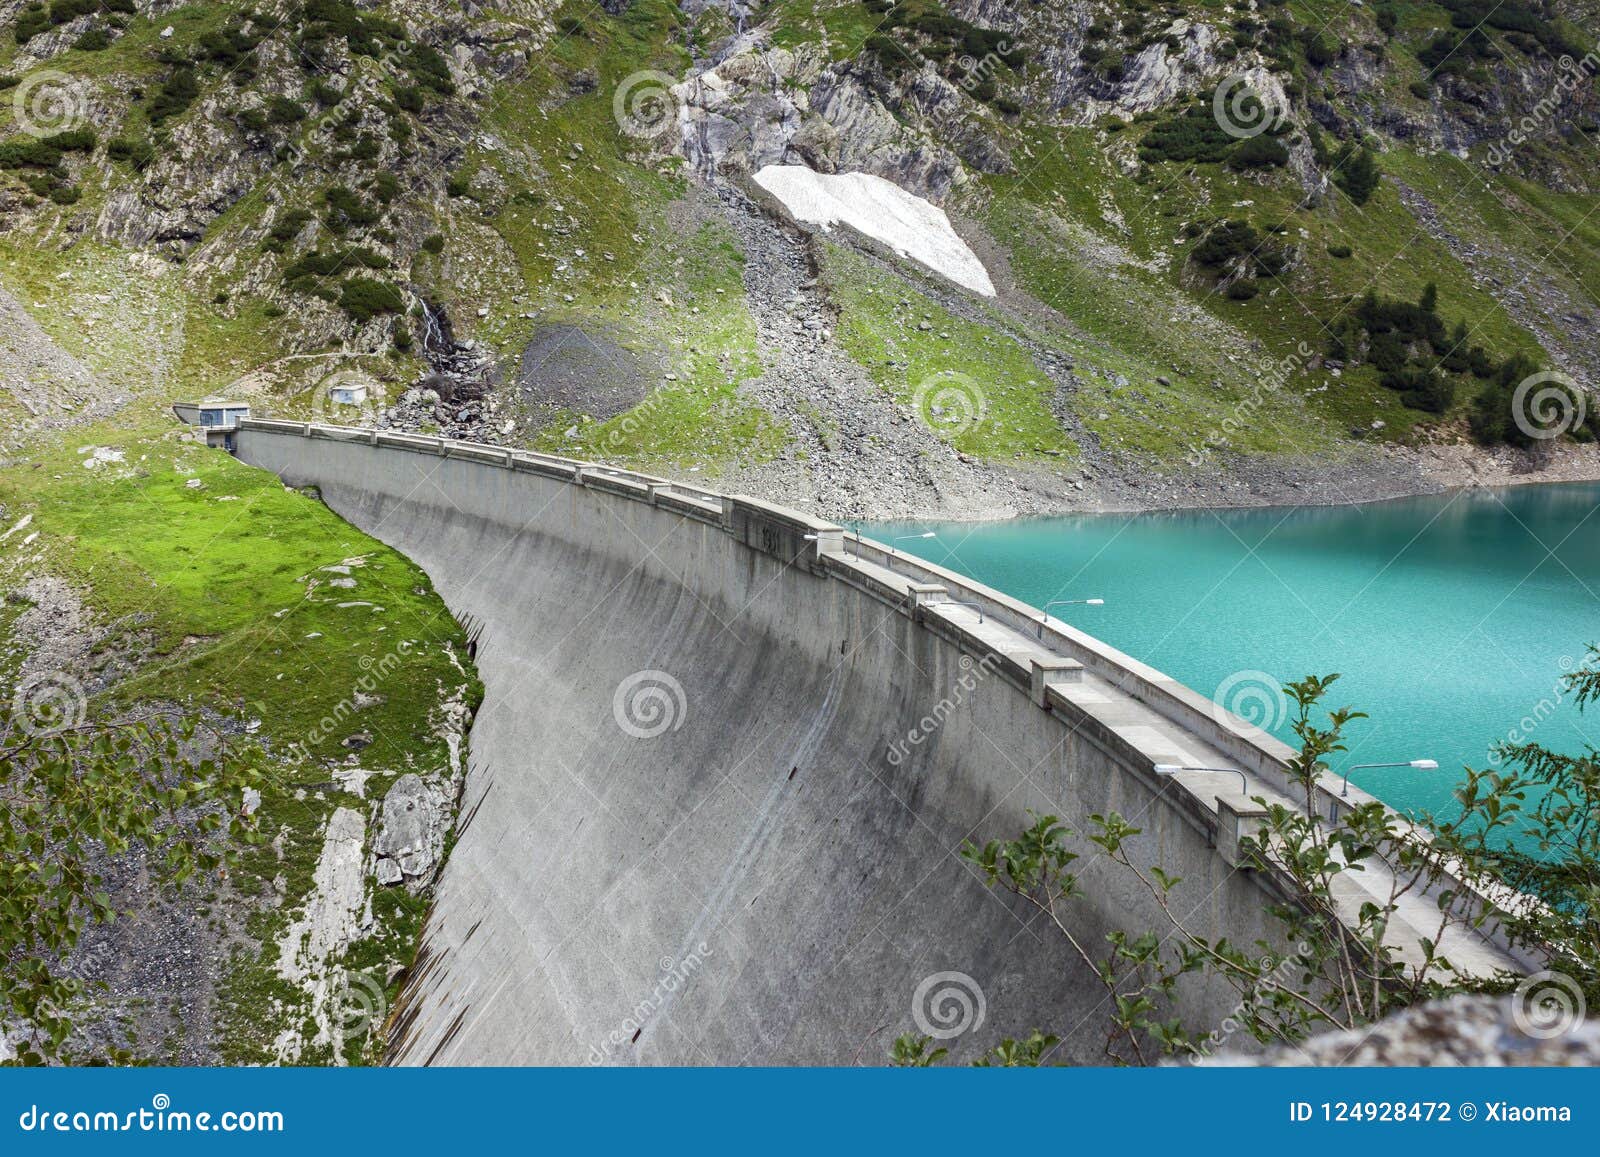 barbellino dam and artificial lake, alps orobie, bergamo,